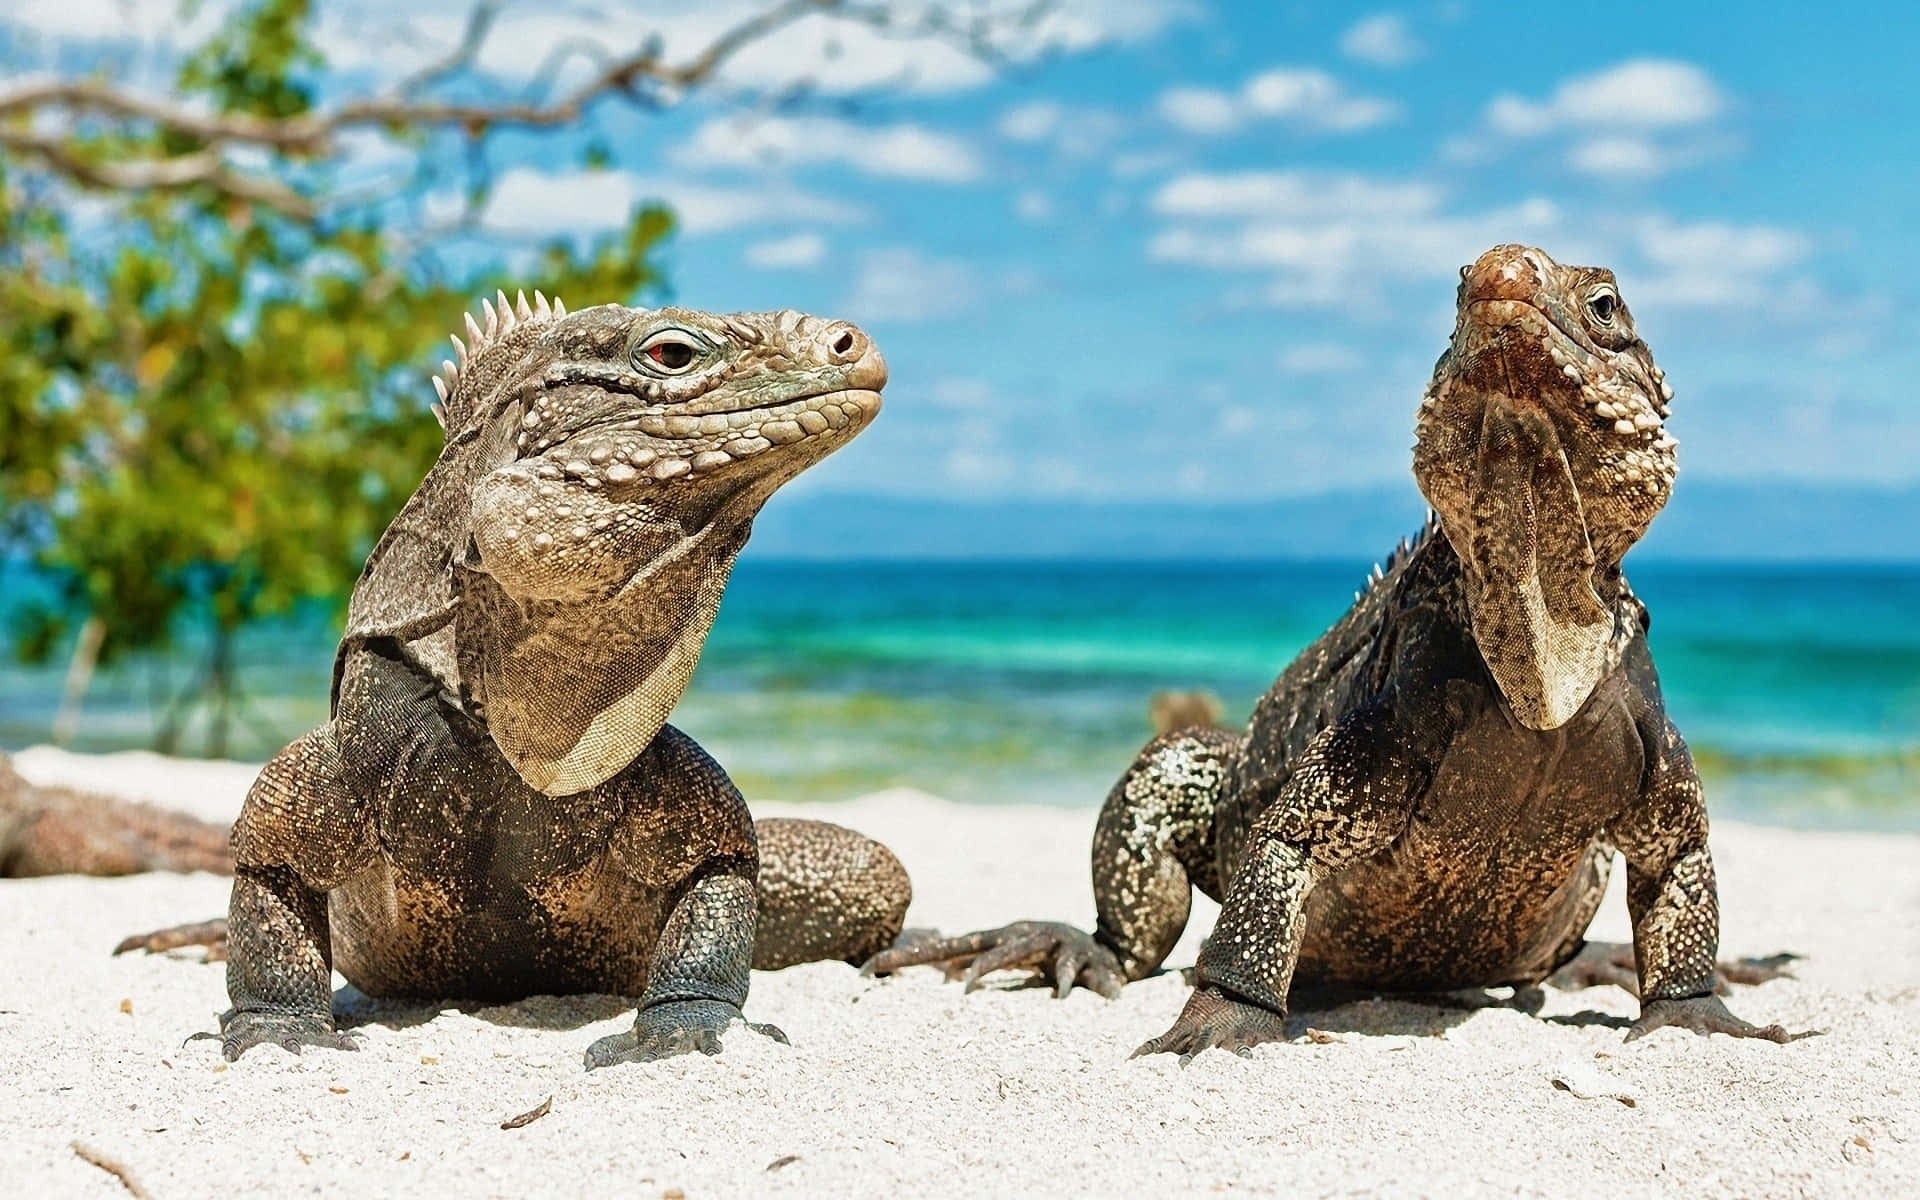 Imagende Una Iguana Lagarto En La Playa.